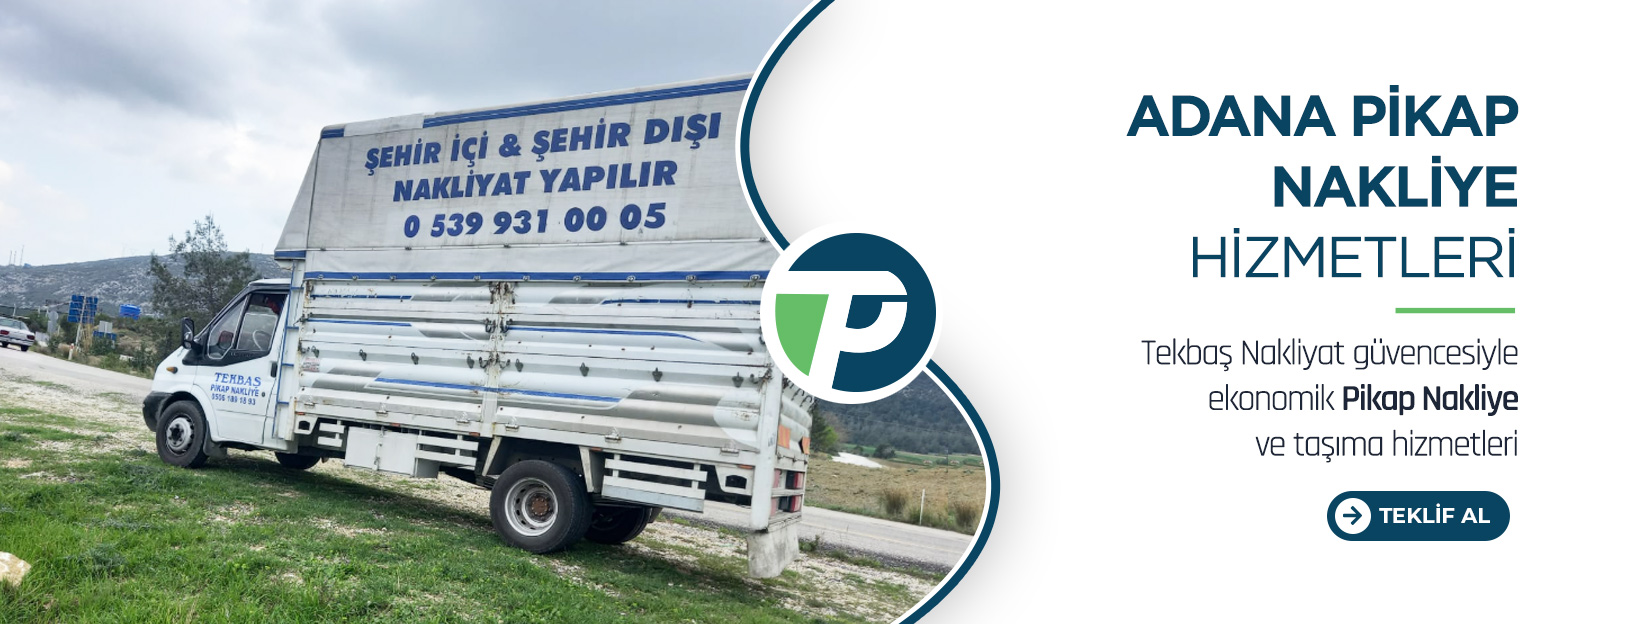 Adana Evden Eve Nakliyat ve Taşımacılık - Tekbaş Nakliyat